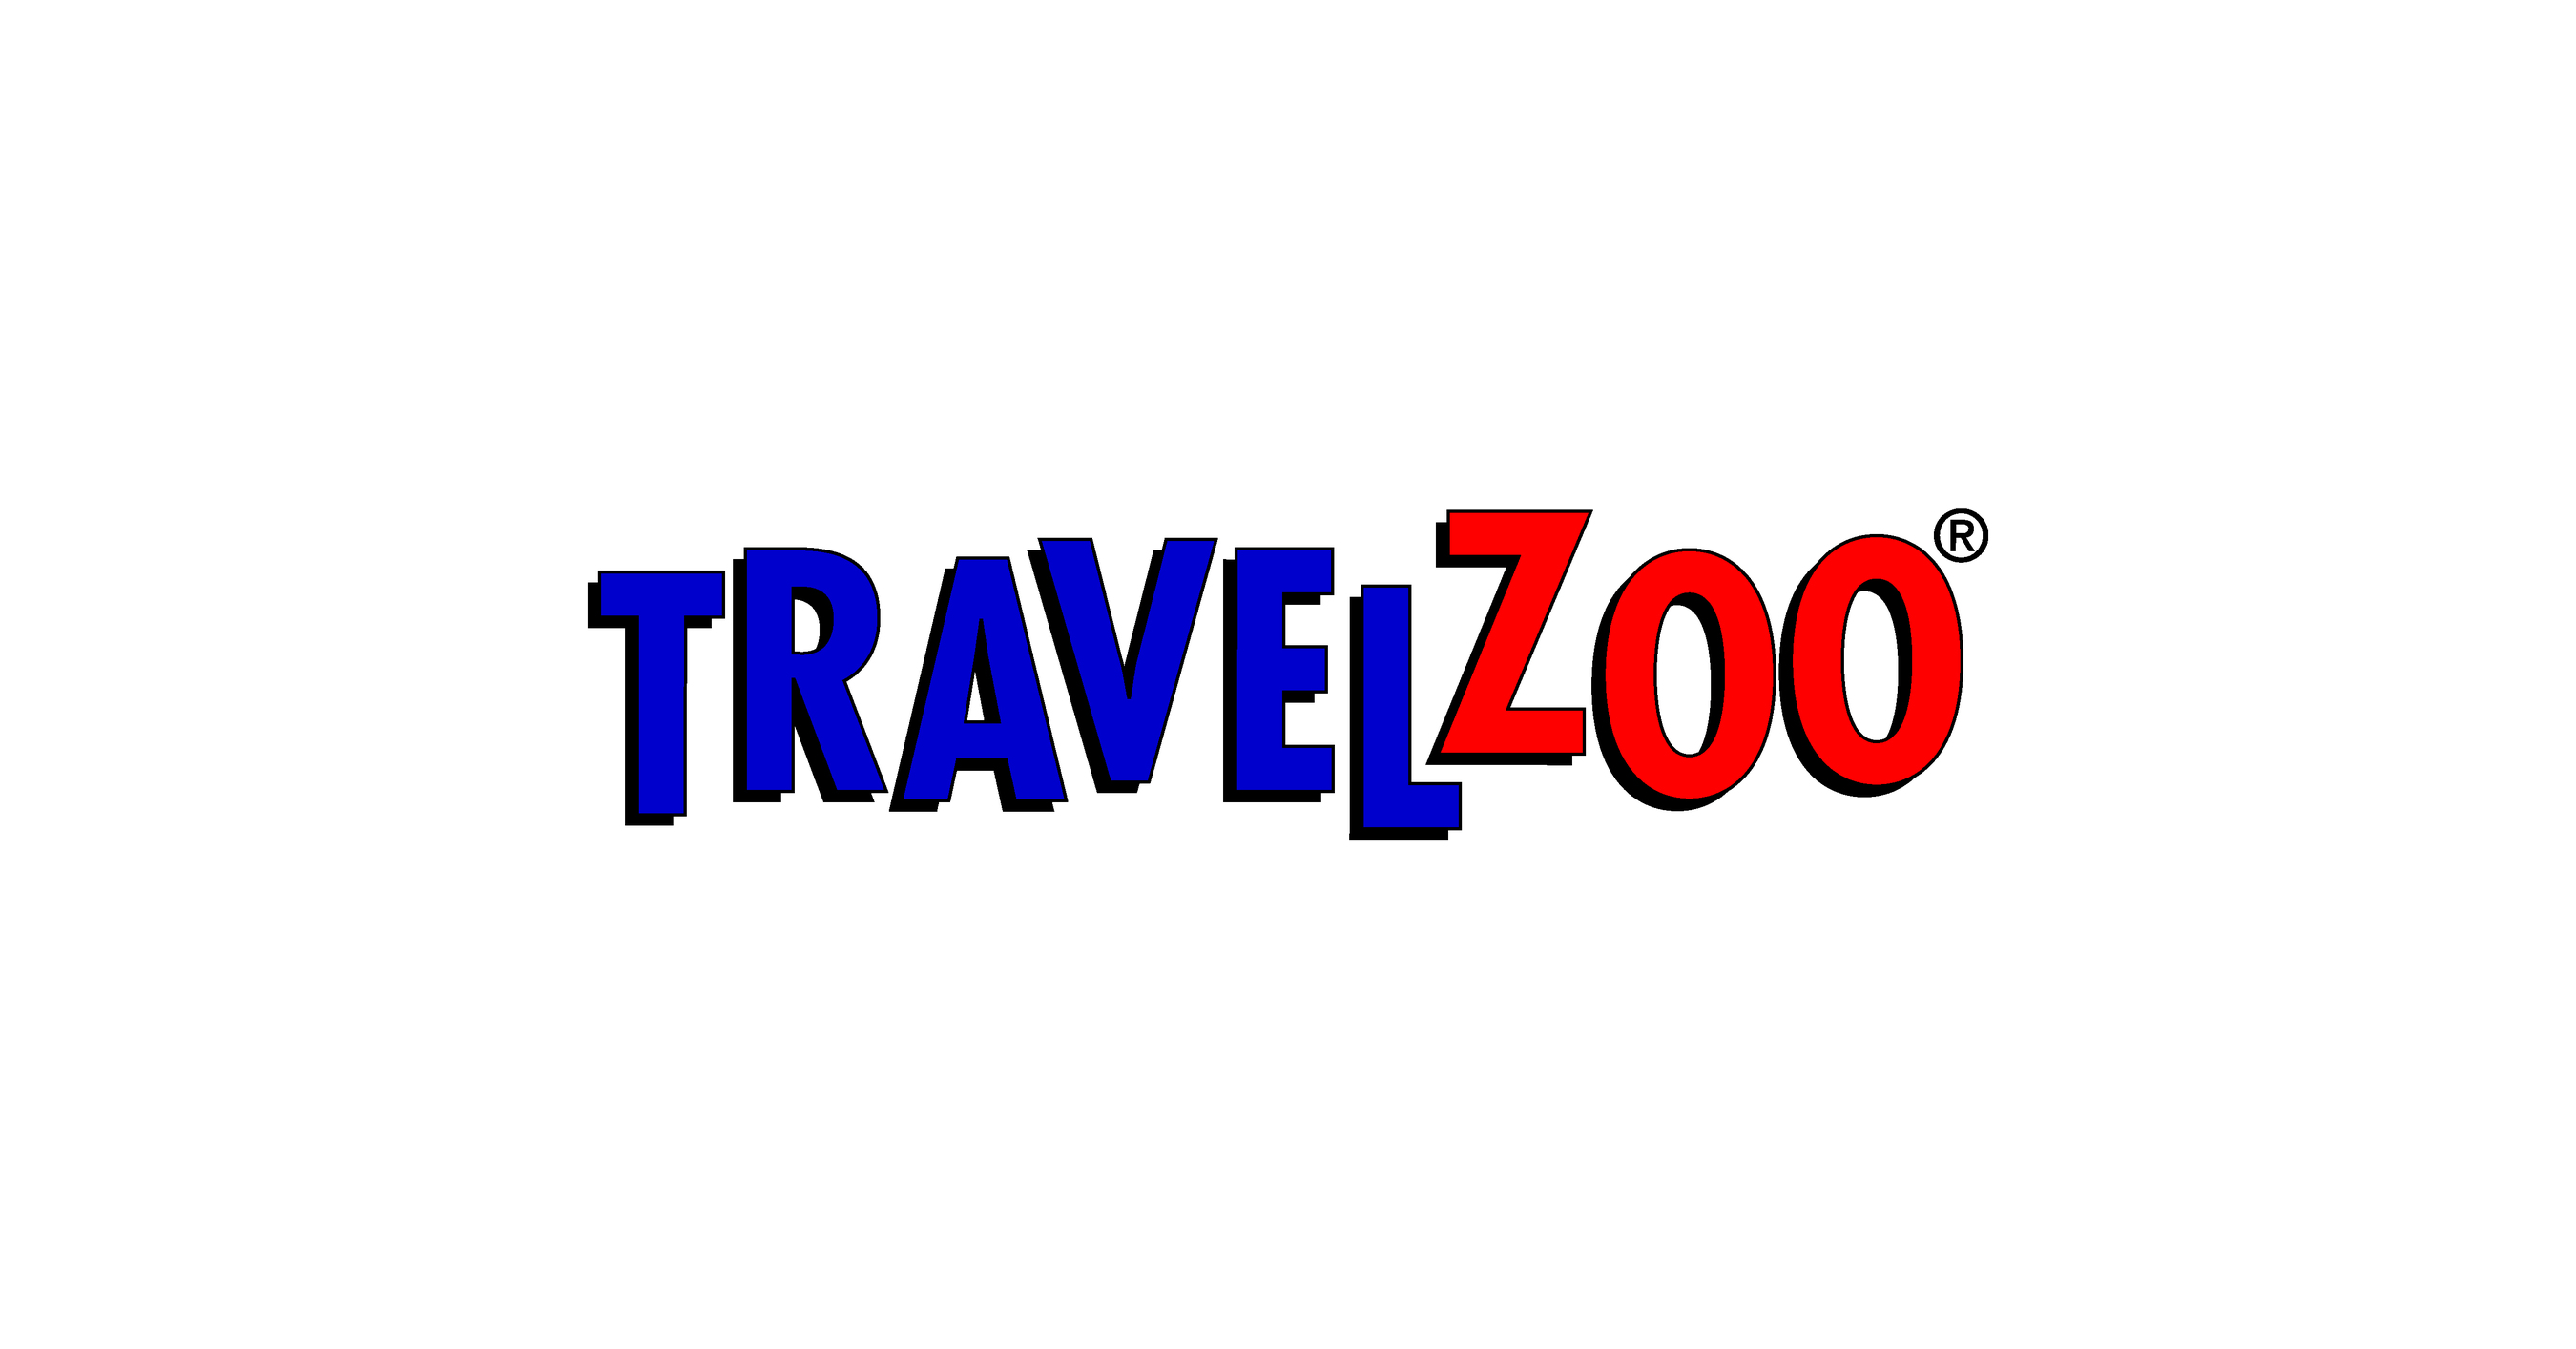 Travelzoo ist die erste Wahl für Reisebegeisterte in Deutschland